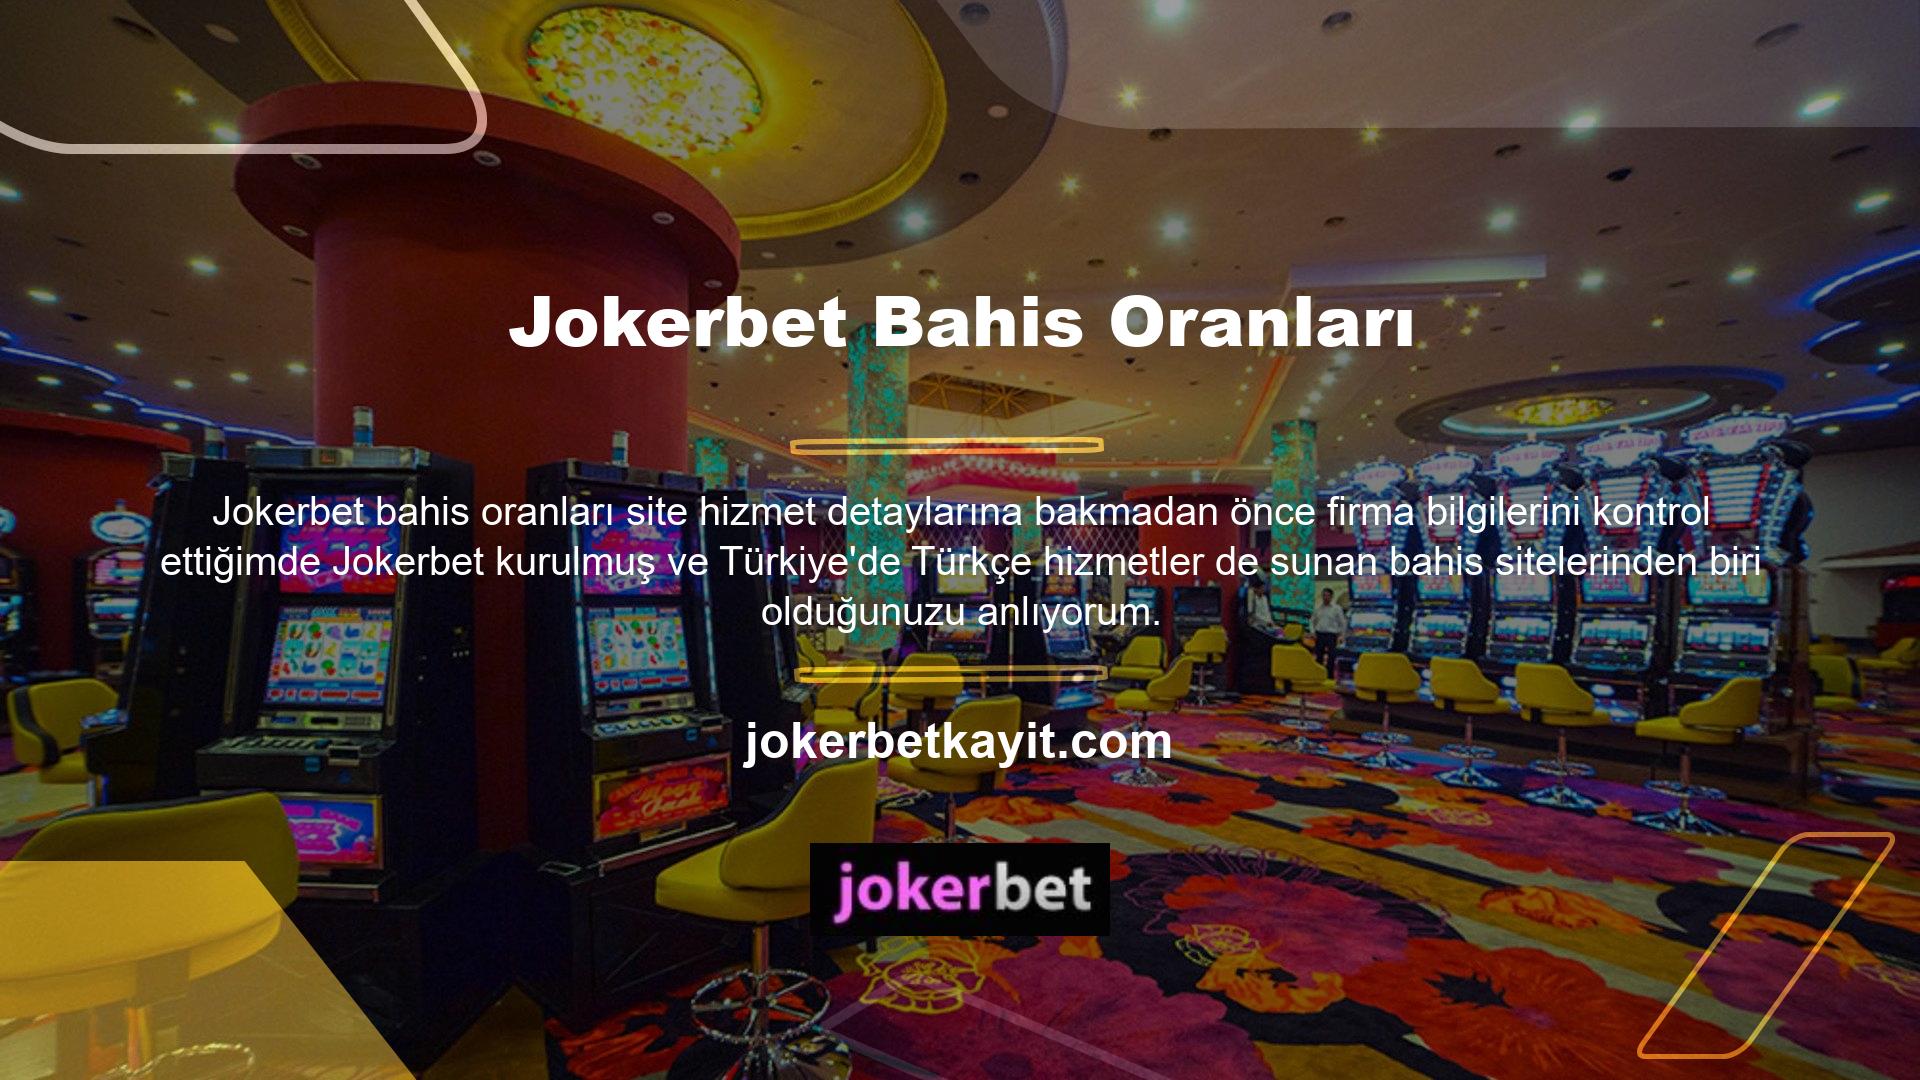 Jokerbet web sitesi de offshore casino sitelerinden biridir